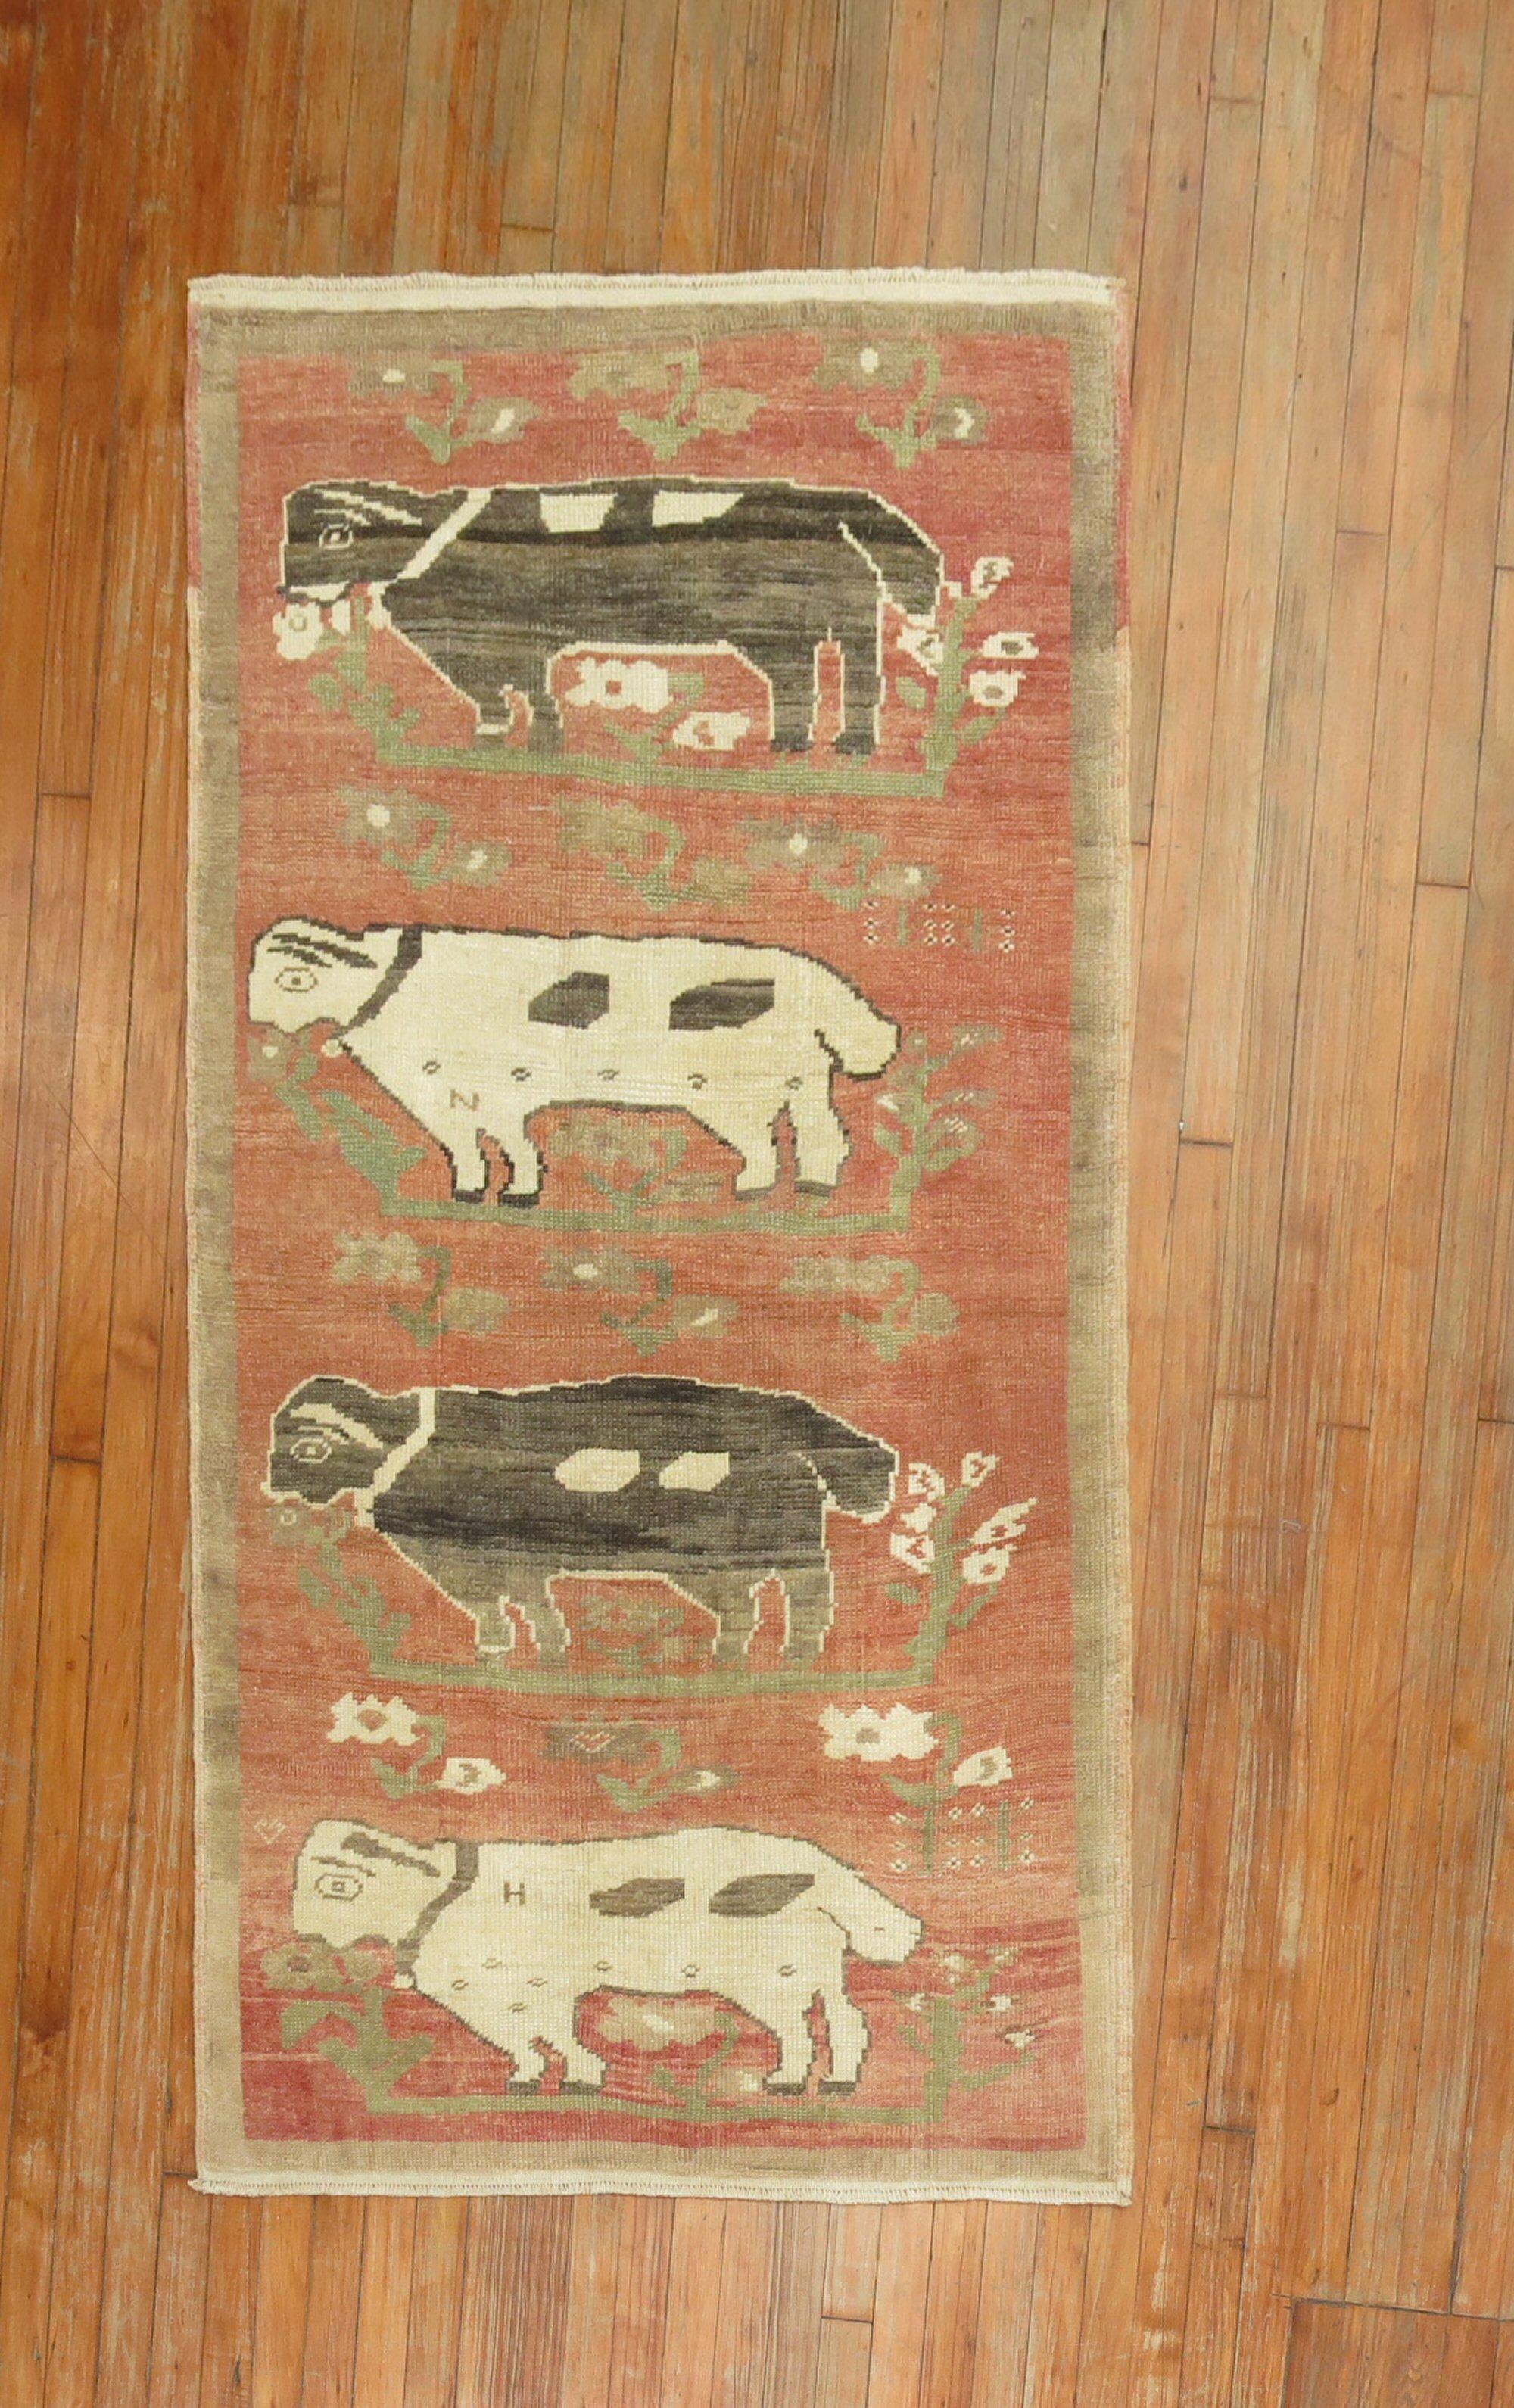 Ein hochdekorativer türkischer Teppich aus der Mitte des 20. Jahrhunderts mit Lämmern und Schafen, die auf einem rosafarbenen Feld locken.

Maße: 3'5'' x 6'3'' um 1940.